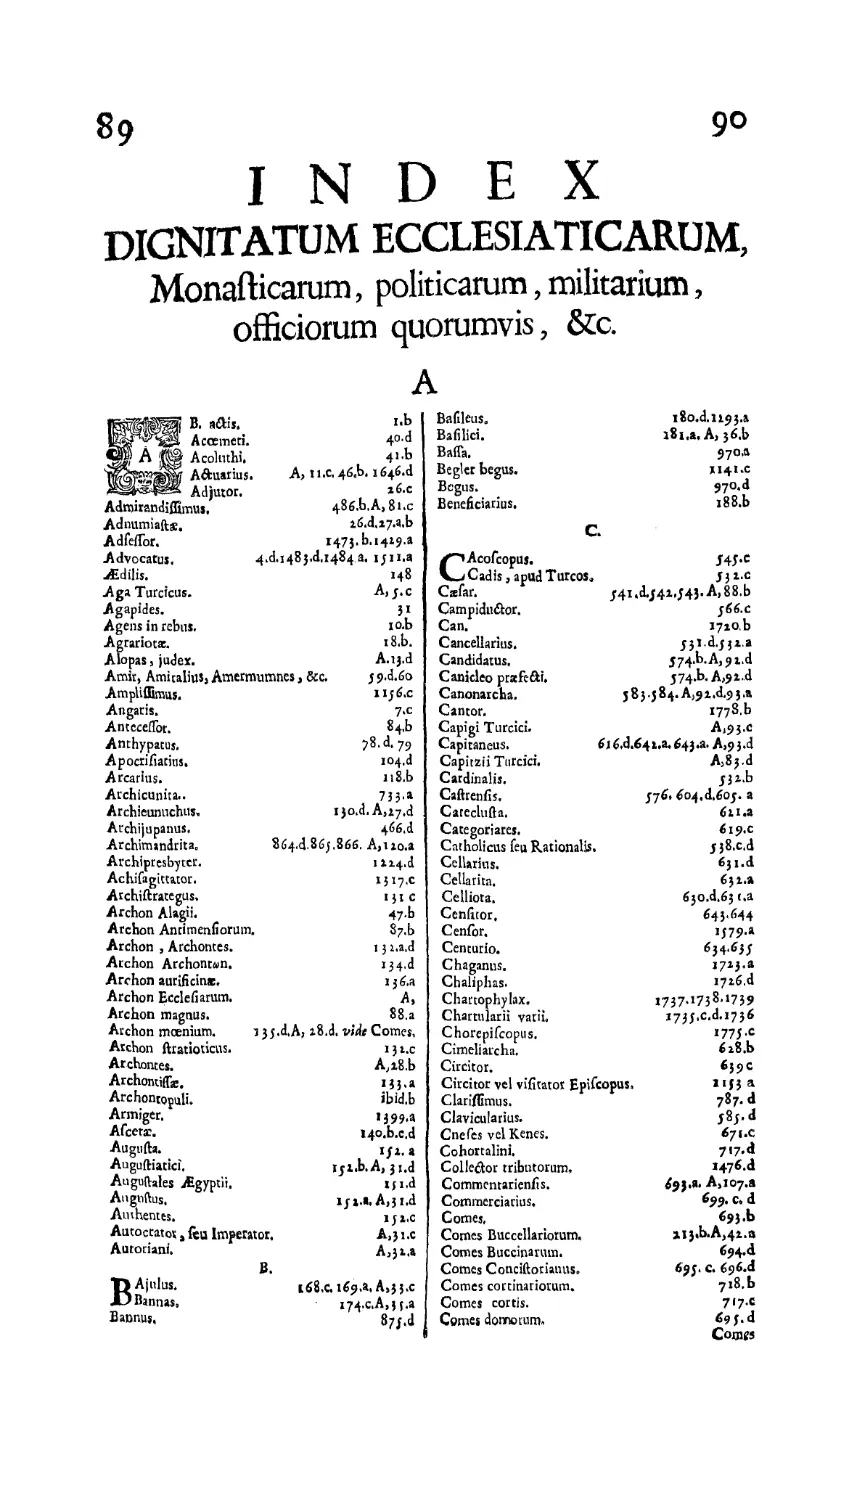 Index Dignitatum ecclesiaticarum
Index dignitatum ecclesiaticarum